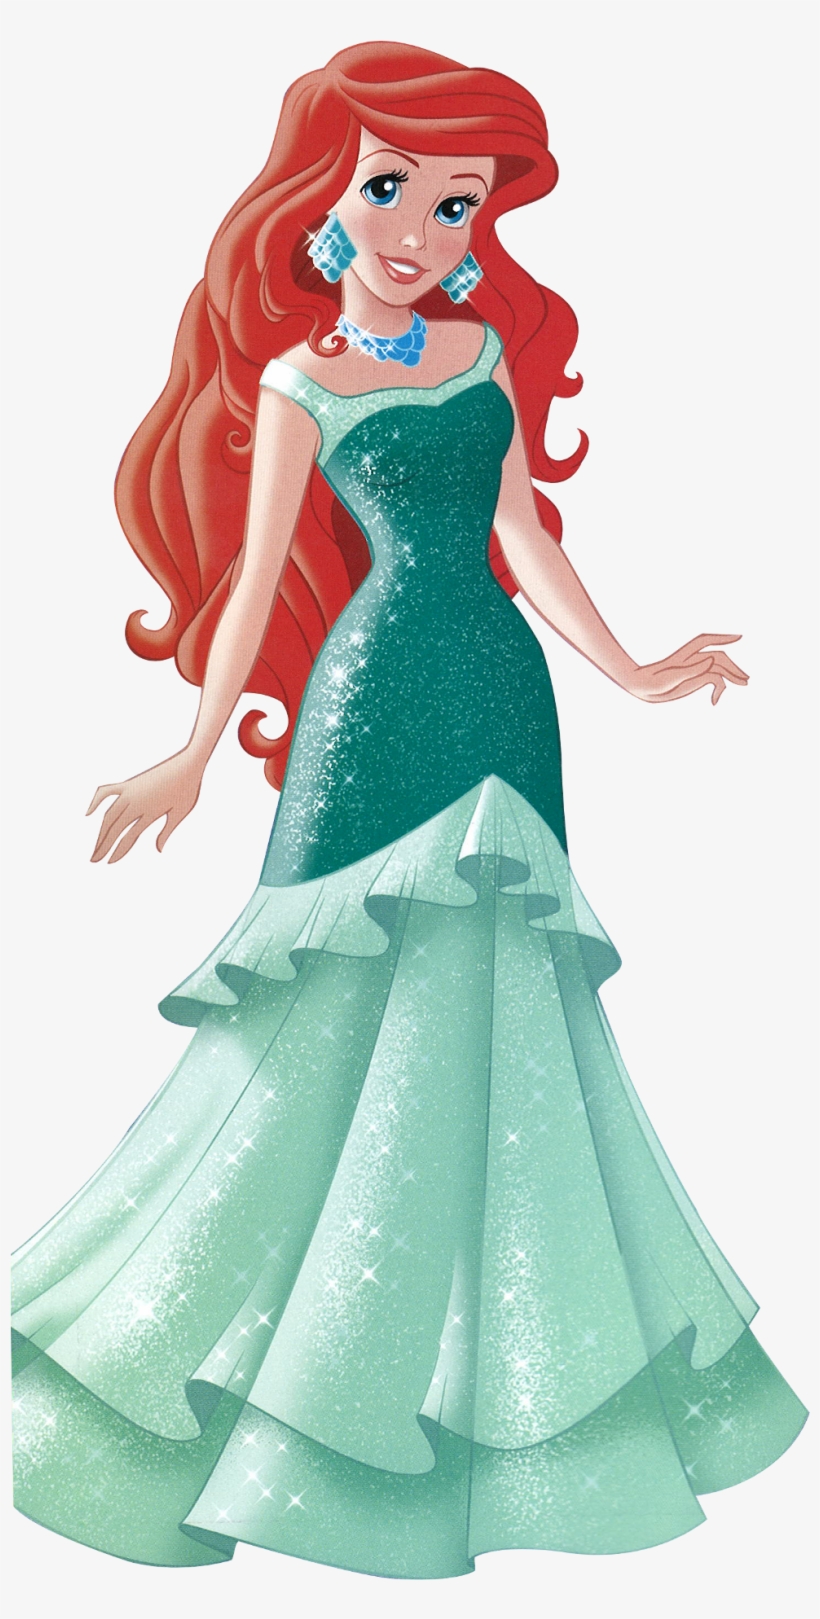 Disney Princess Images Ariel - Disney Princess Ariel Human, transparent png #112395